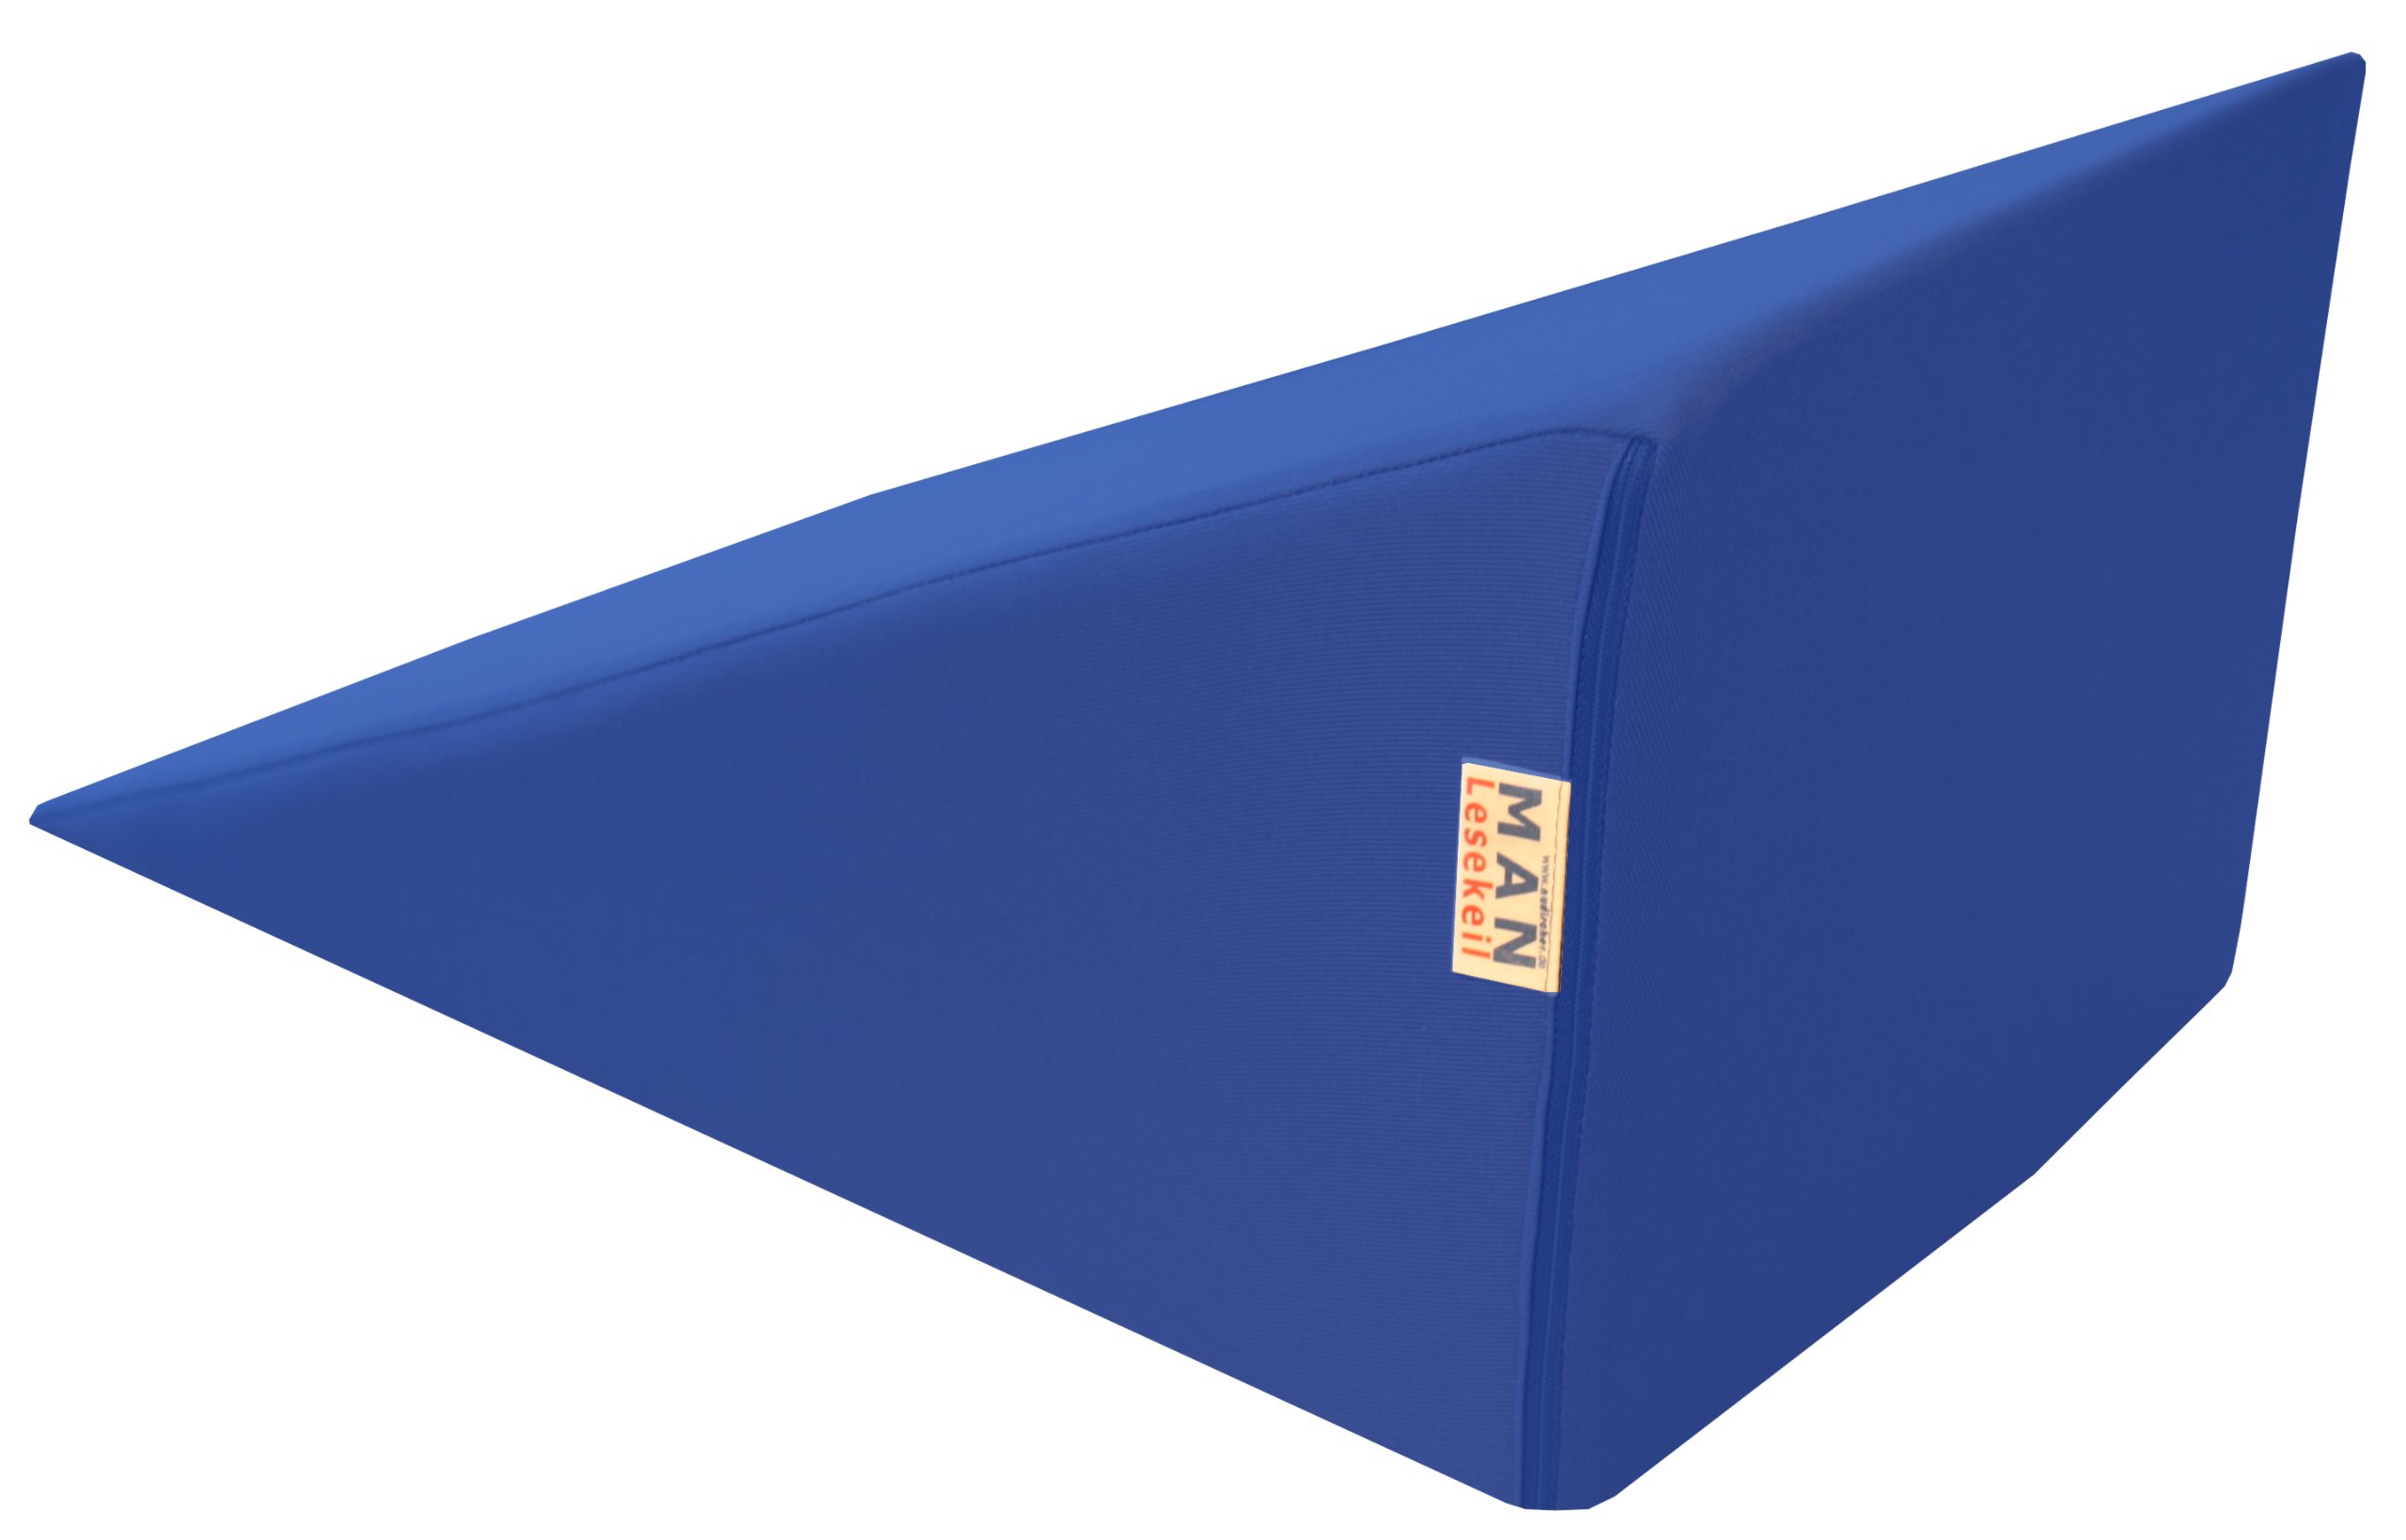 nudischer Lesekeil MAN170-45x30x Höhe 24 cm Bezug Farbe blau